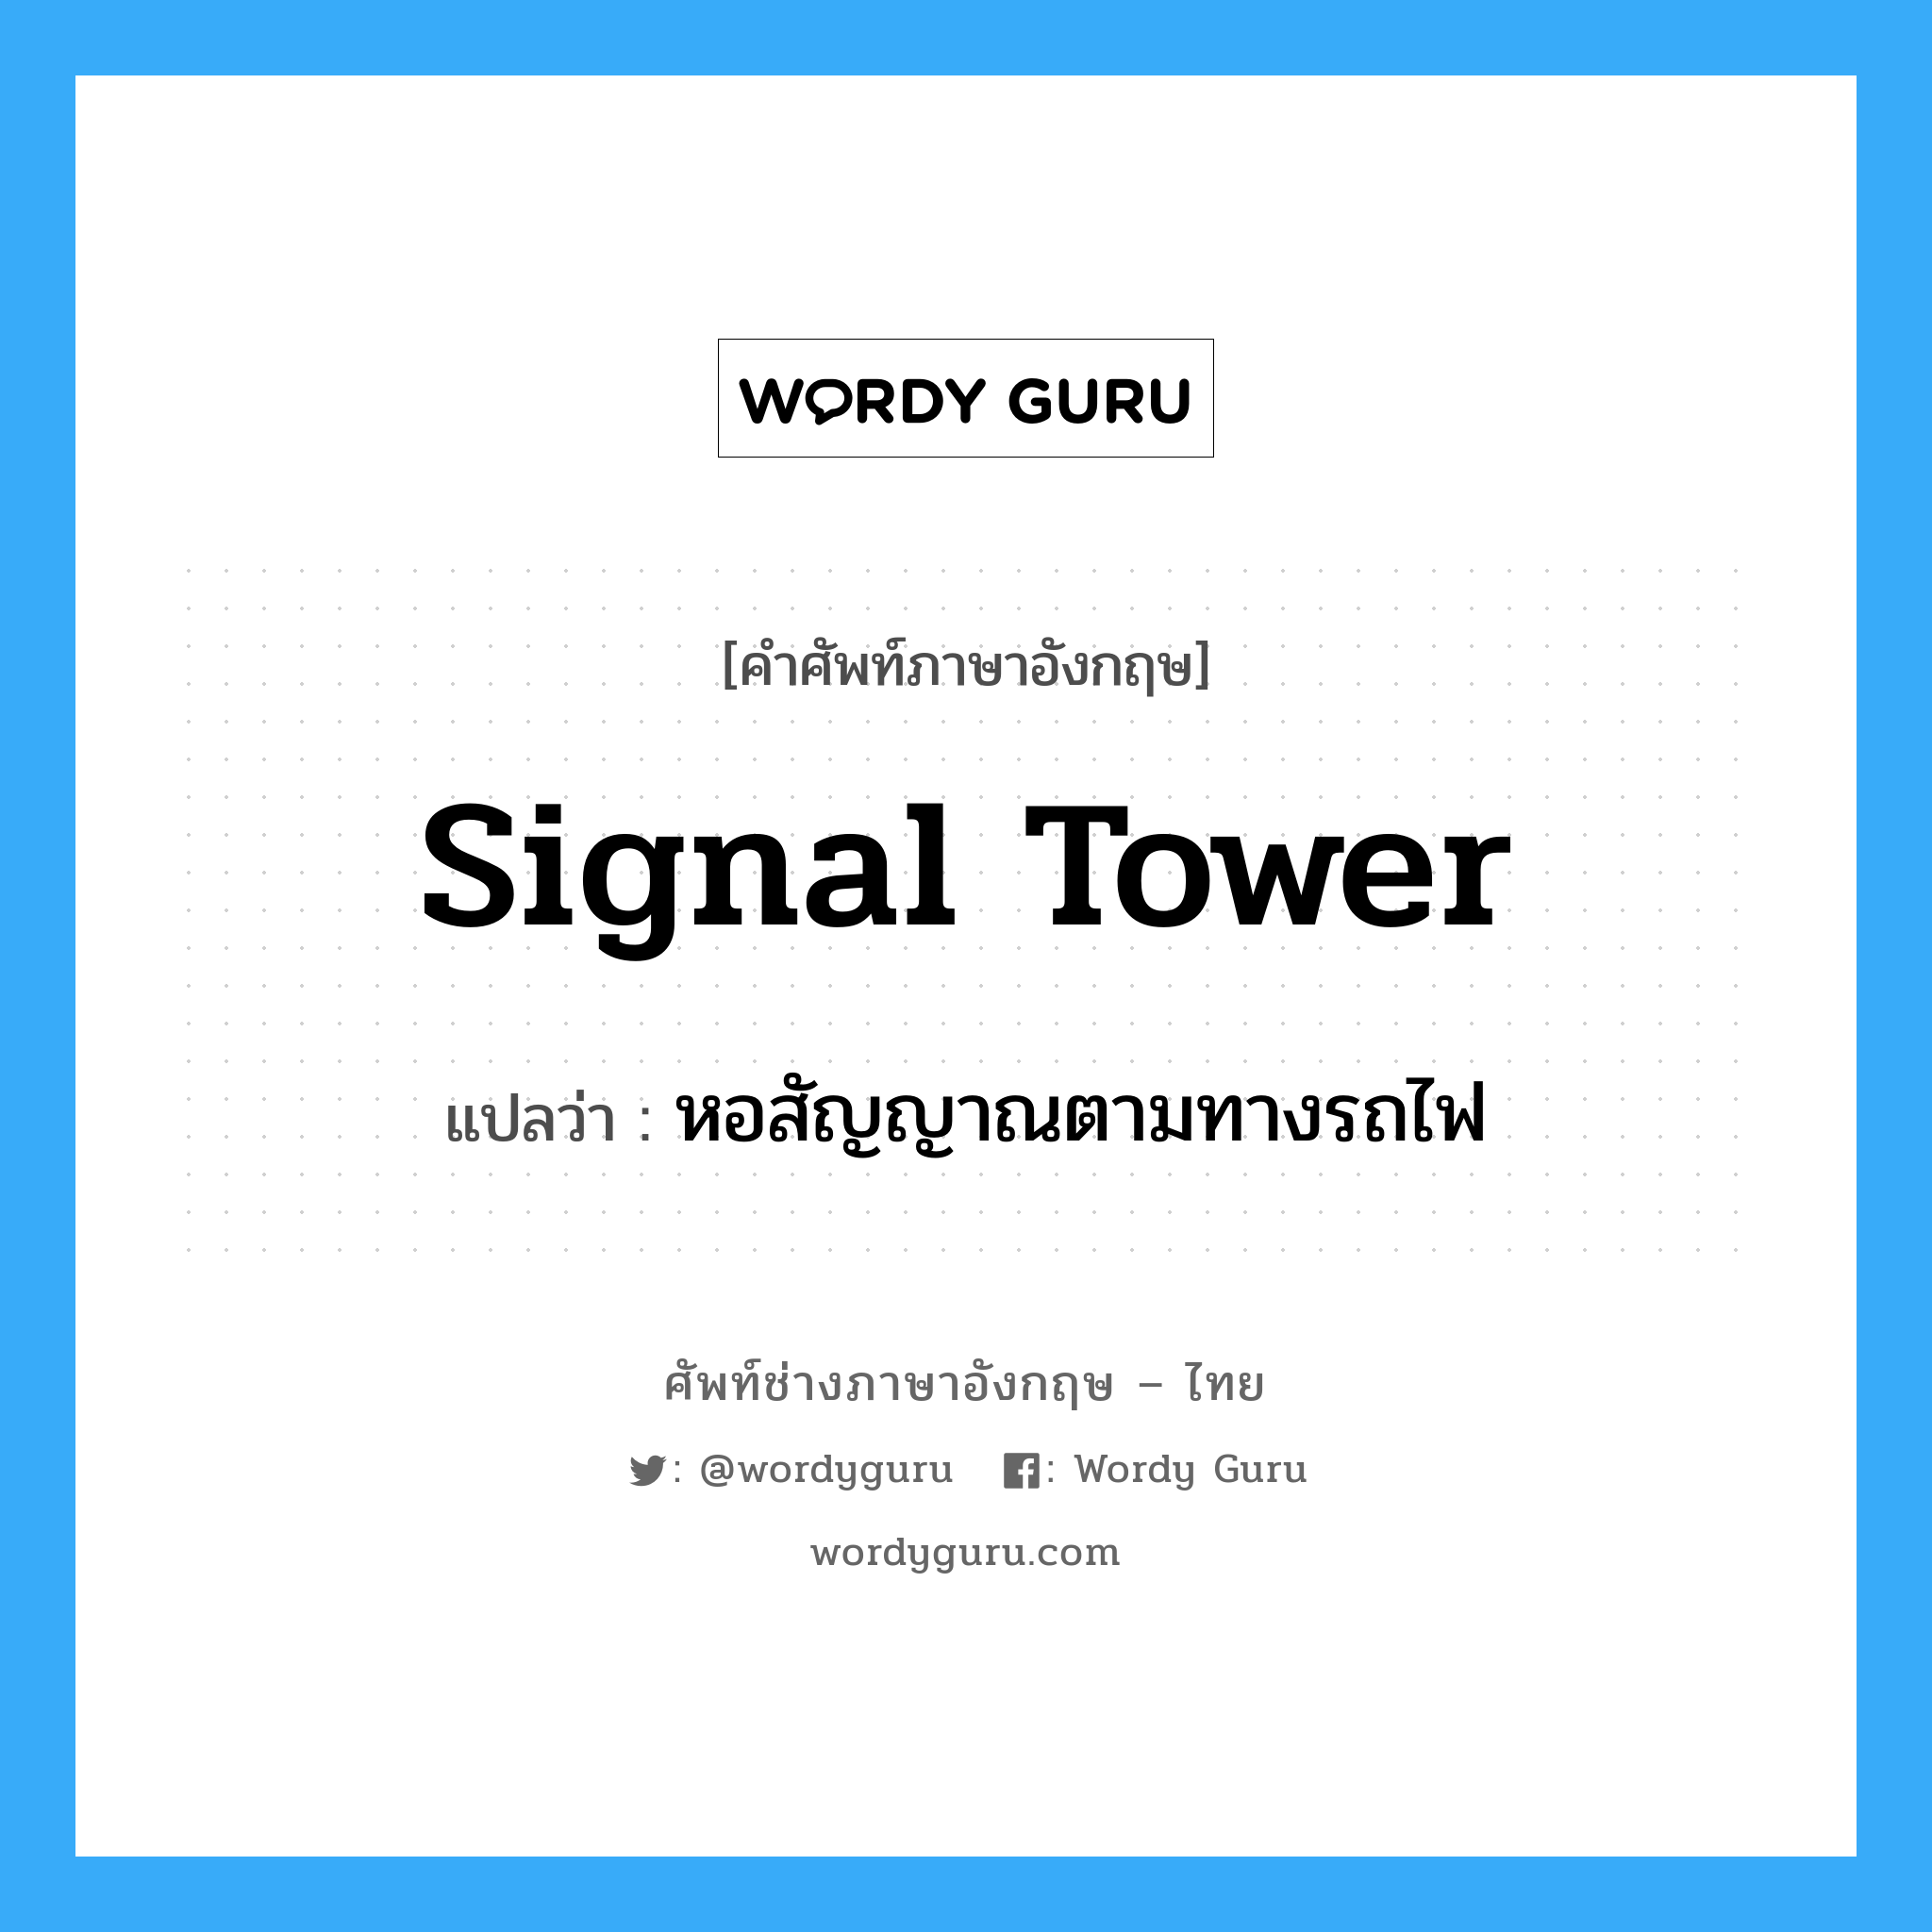 หอสัญญาณตามทางรถไฟ ภาษาอังกฤษ?, คำศัพท์ช่างภาษาอังกฤษ - ไทย หอสัญญาณตามทางรถไฟ คำศัพท์ภาษาอังกฤษ หอสัญญาณตามทางรถไฟ แปลว่า signal tower